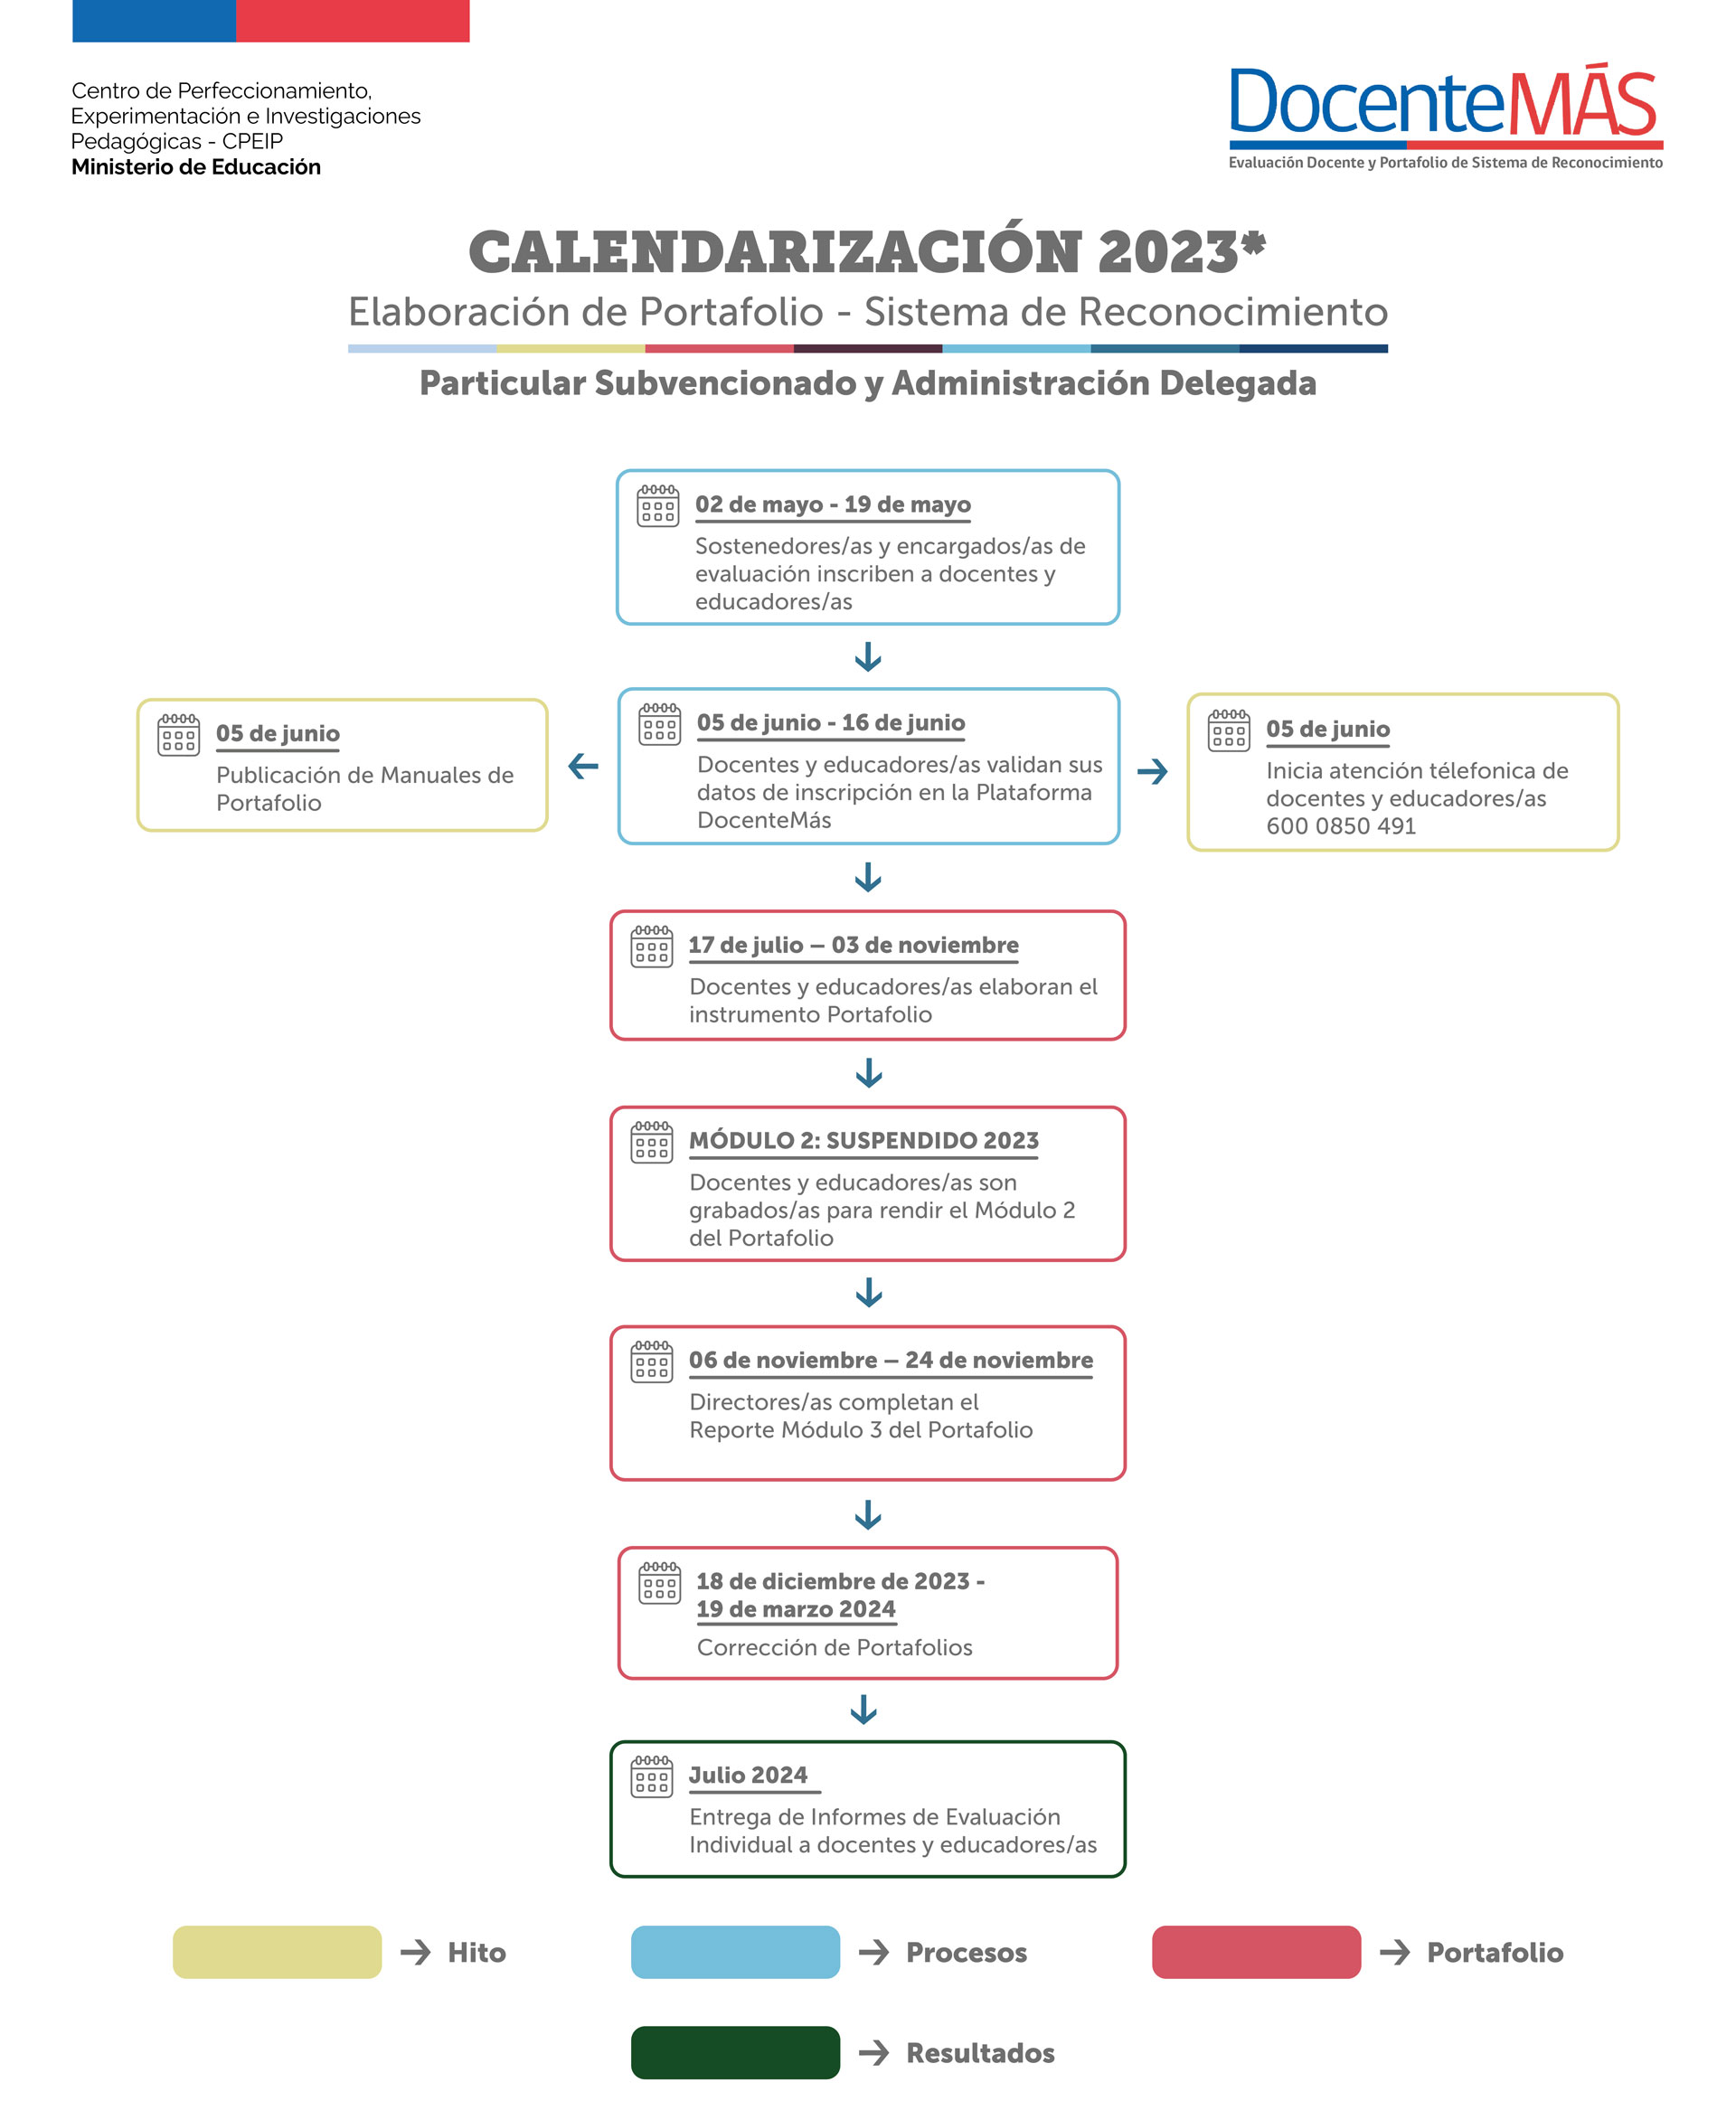 Calendario 2023 Dependencia Particular Subvencionada y Administración Delegada